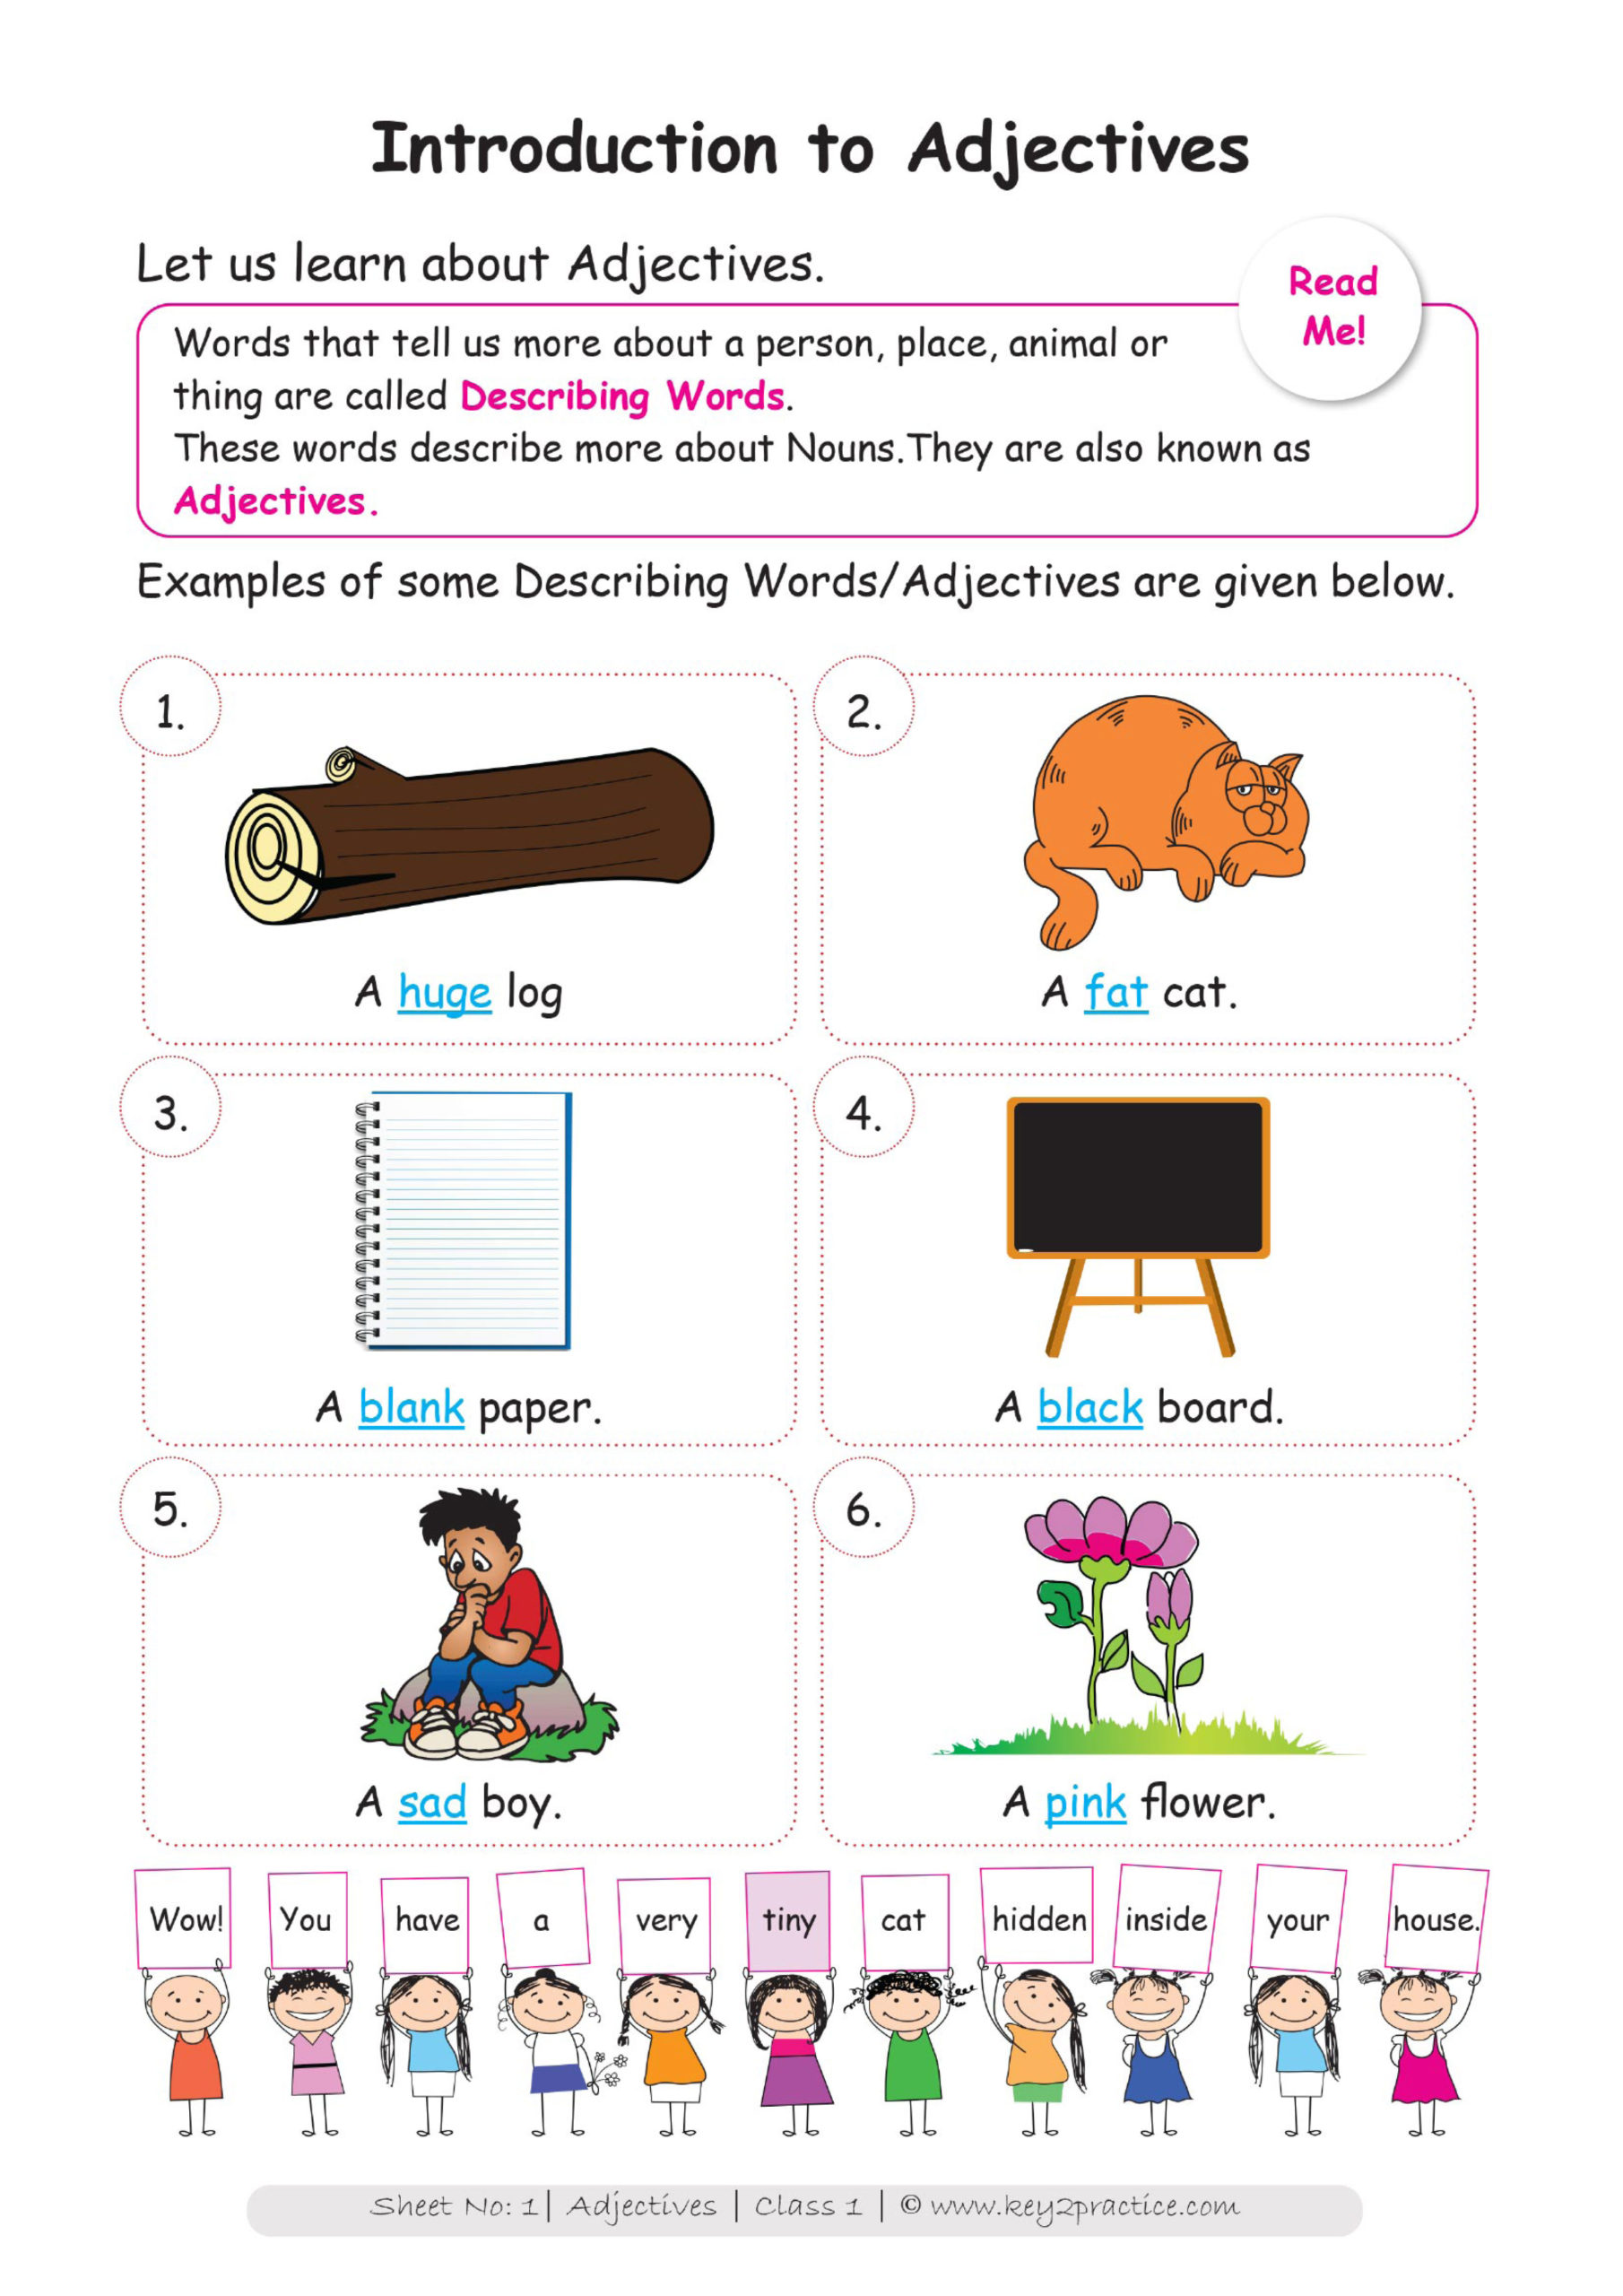 synonyms-and-antonyms-worksheet-grade-1-kidsworksheetfun-antonyms